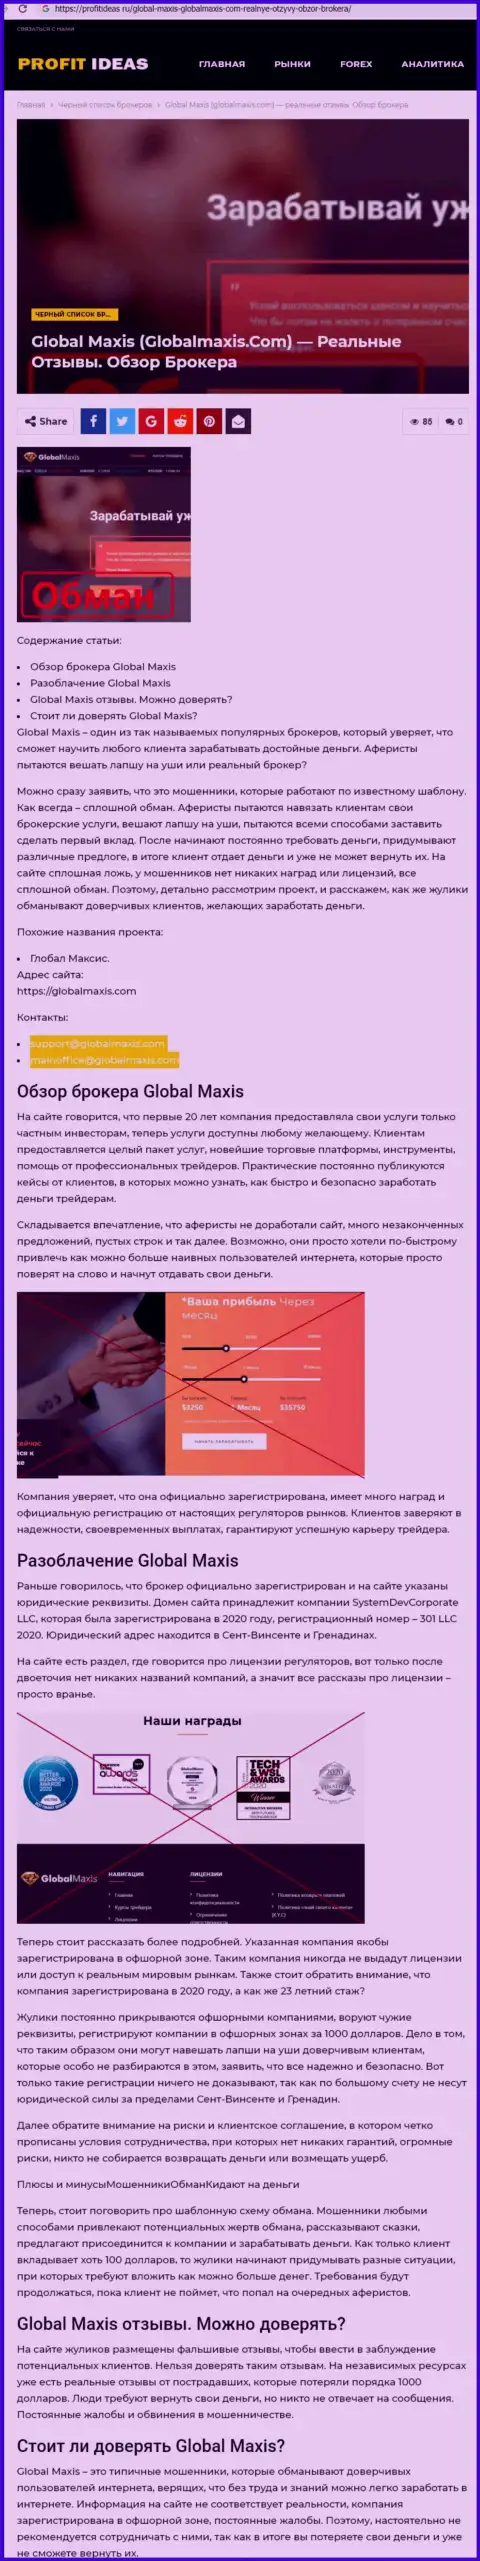 Global Maxis - это мошенники, которых надо обходить стороной (обзор противозаконных действий)